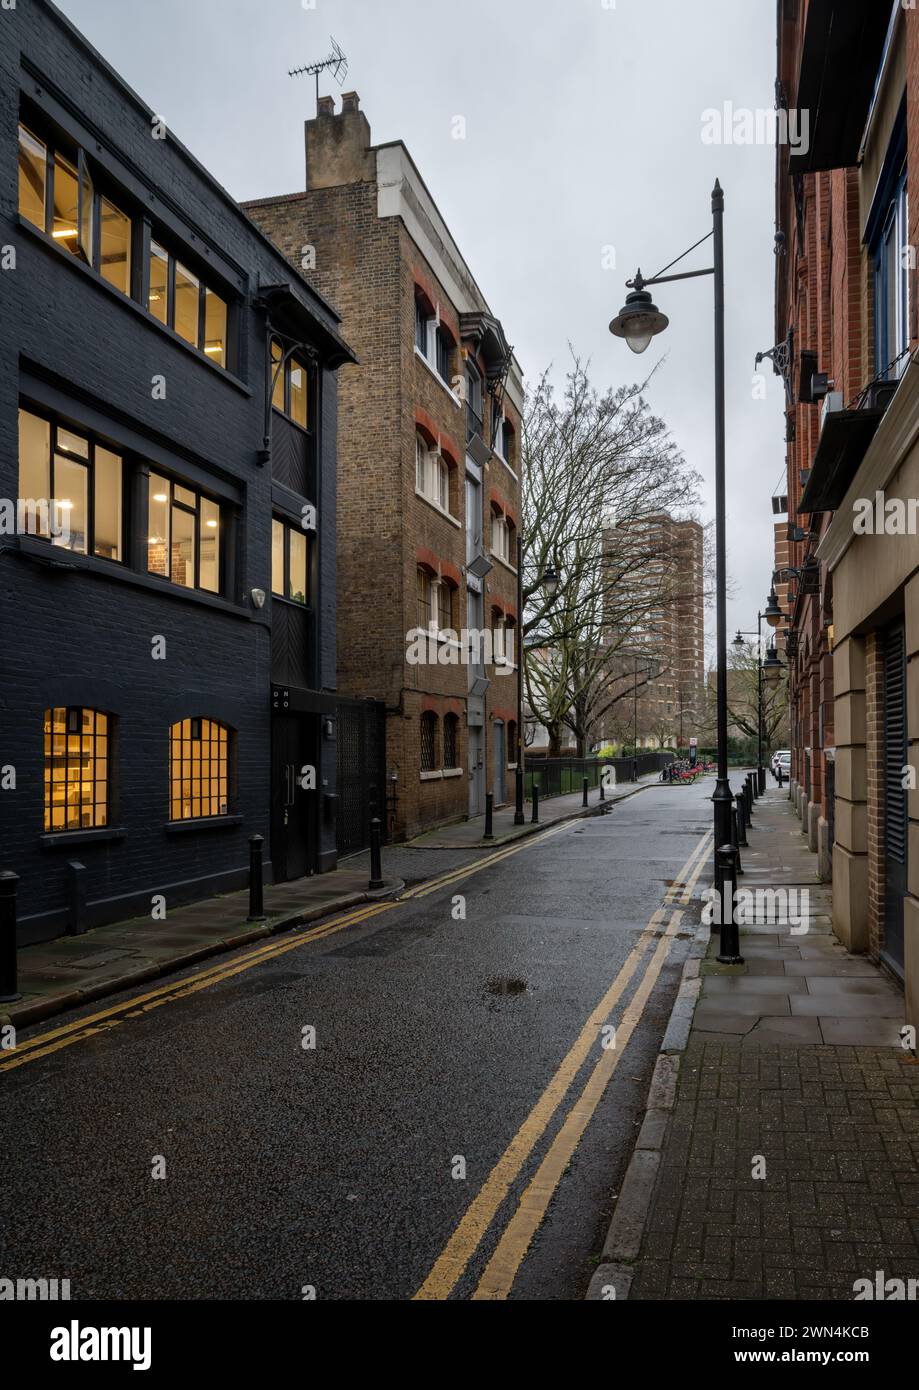 Bermondsey, Londra, Regno Unito: Tyers Gate, una piccola strada che porta da Bermondsey Street nel quartiere londinese di Southwark. Foto Stock